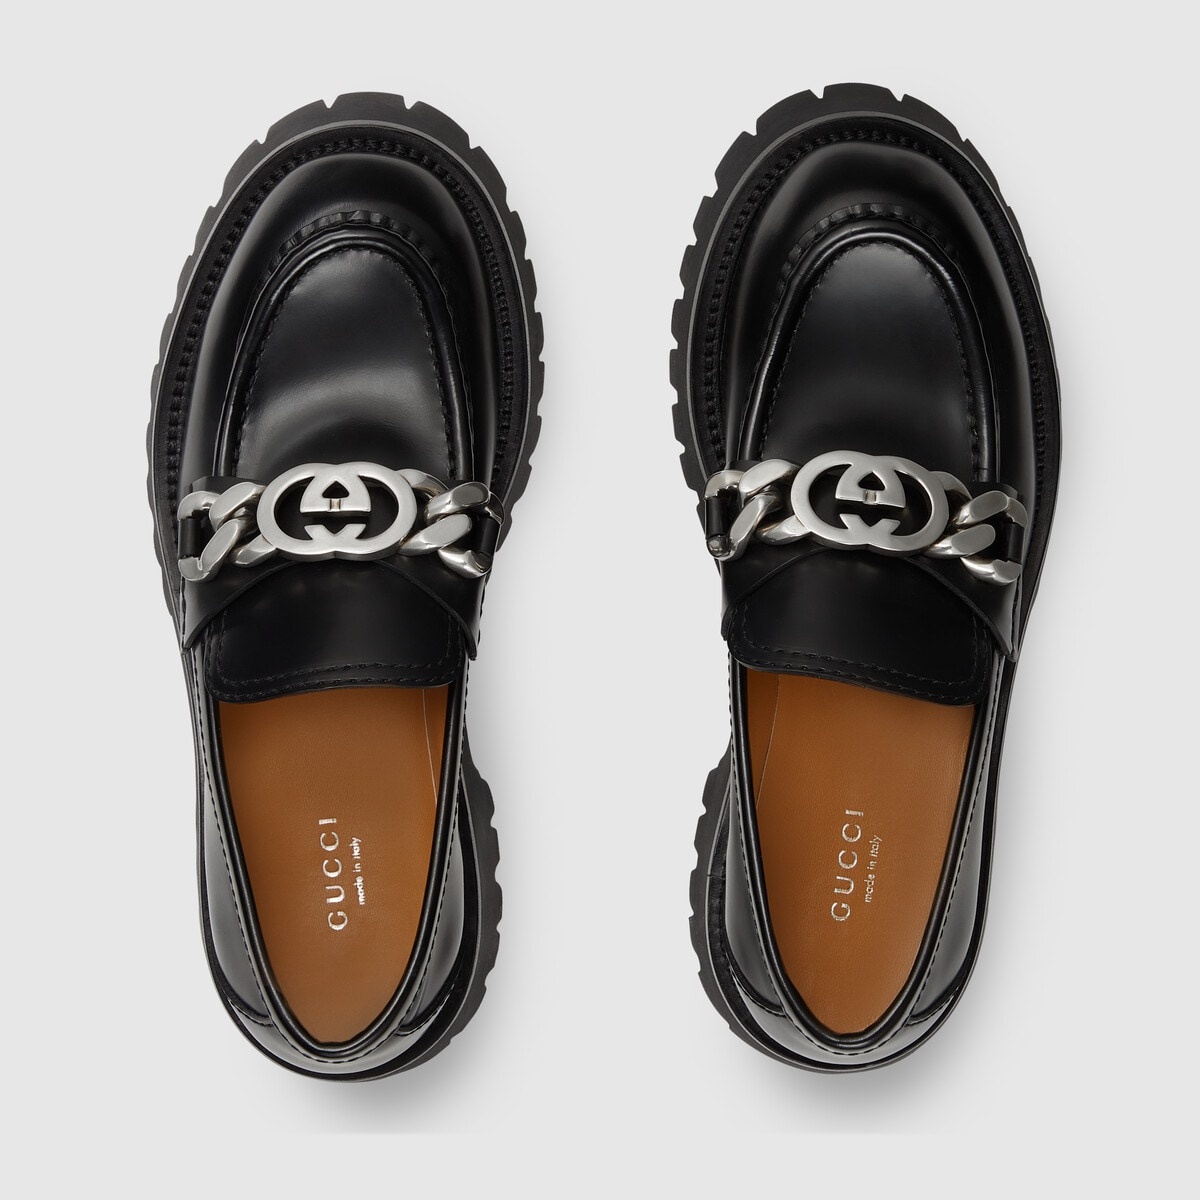 Women's lug sole loafer - 5